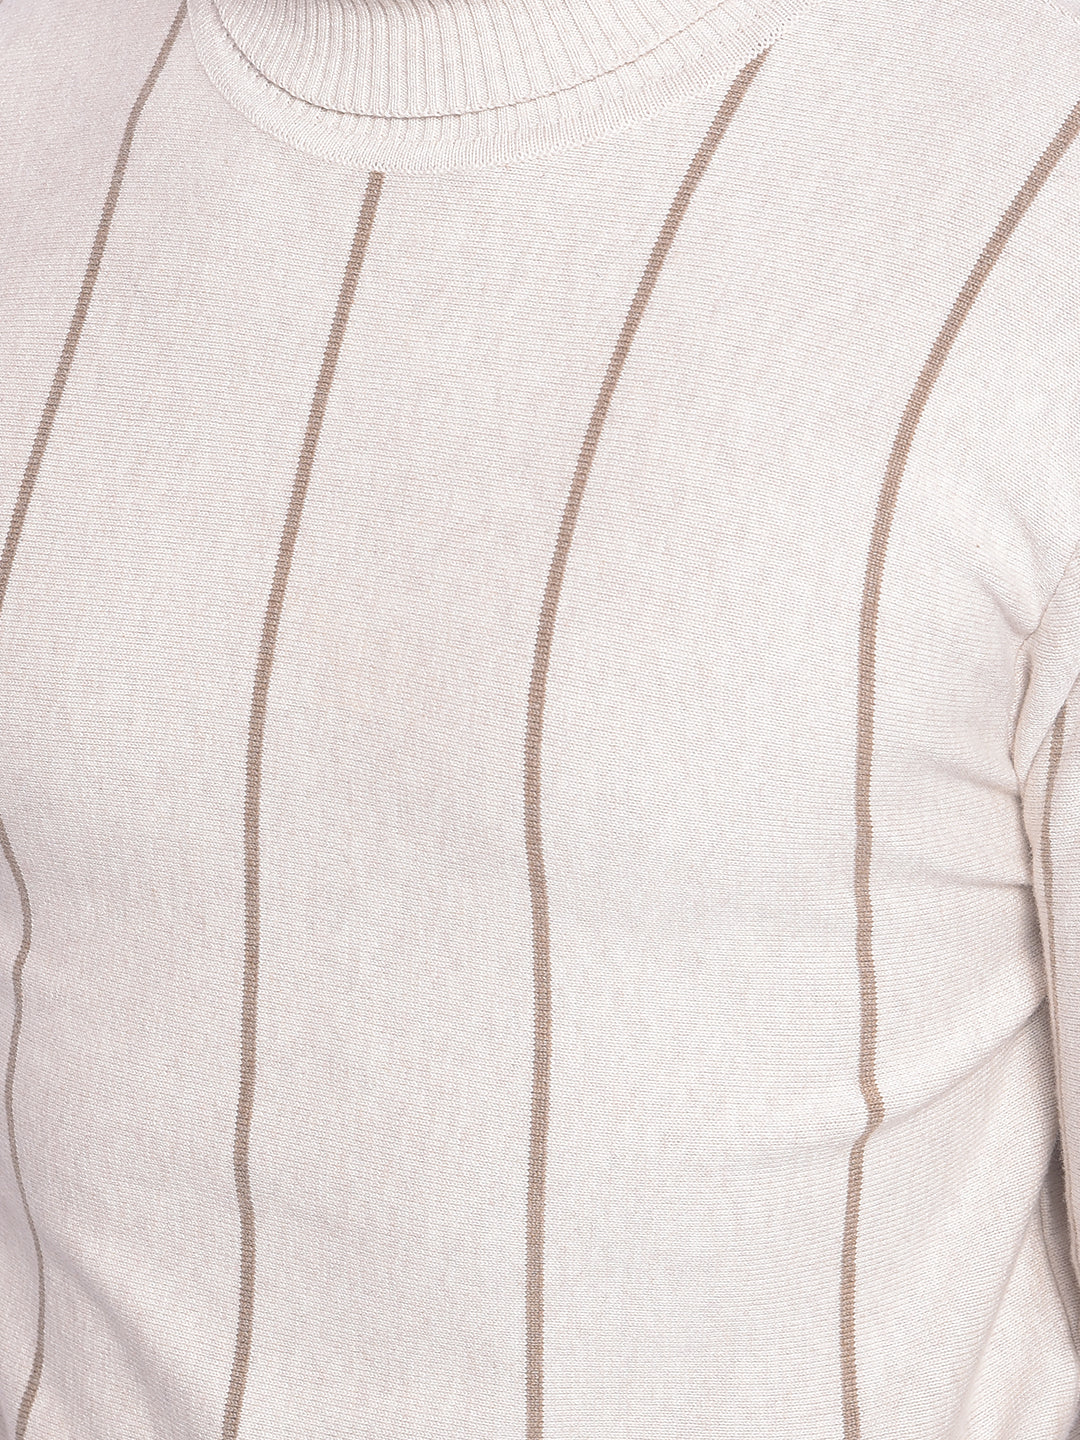 Beige Striped Sweater-Men Sweaters-Crimsoune Club